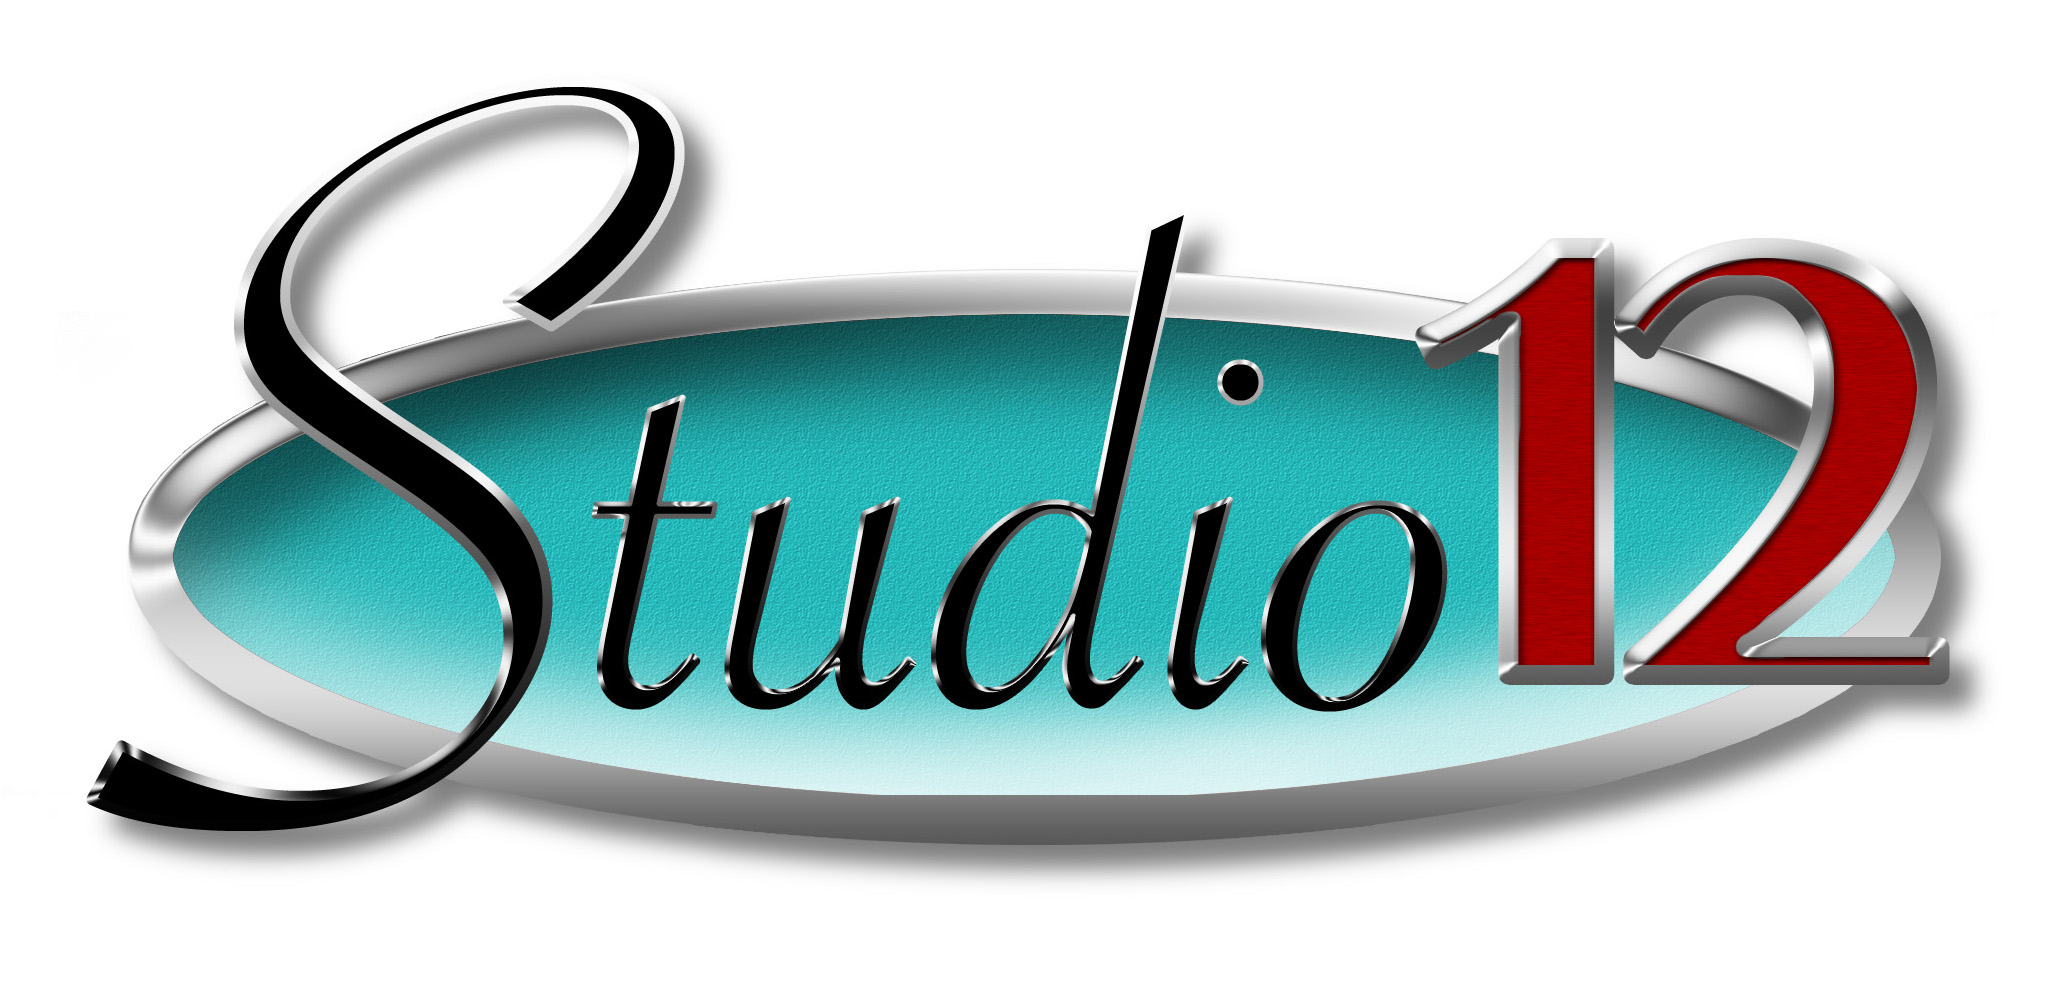 Studio 12